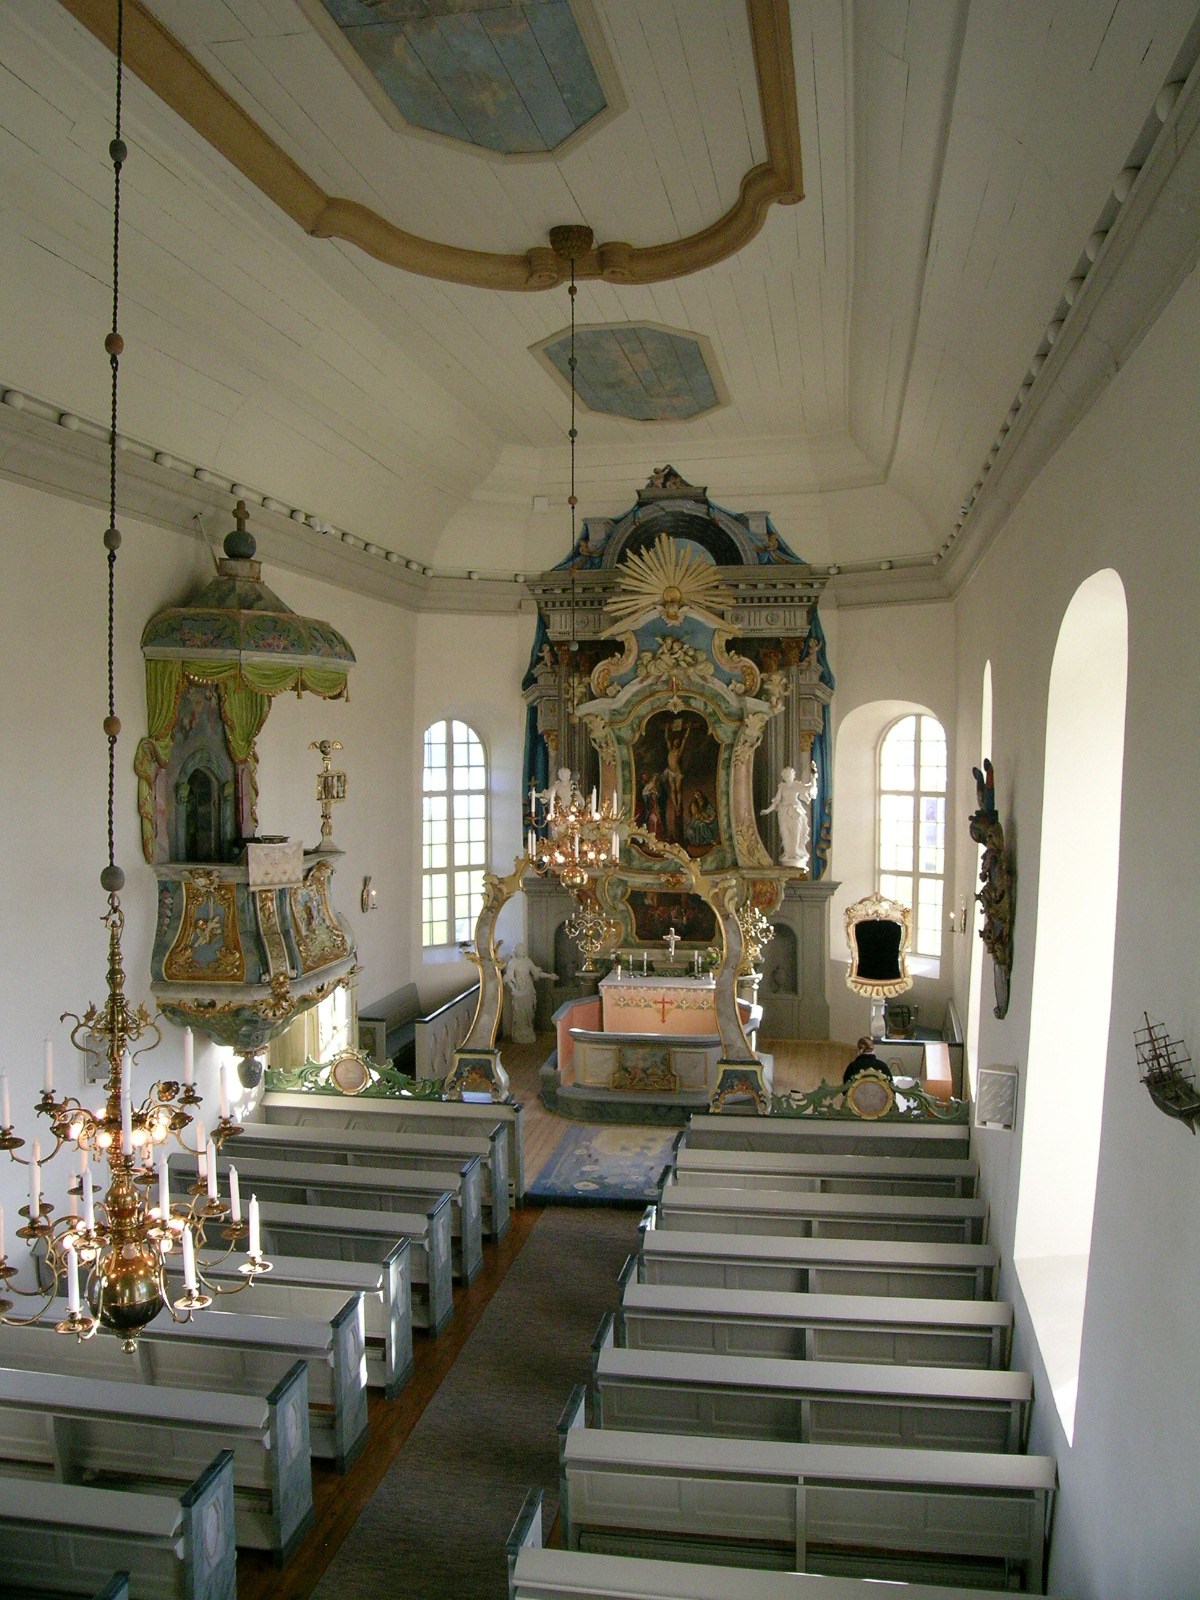 Näs kyrka, interiör, kyrkorummet sett mot koret i öster.

Bilderna är tagna av Christina Persson & Isa Lindkvist, bebyggelseantikvarier vid Jämtlands läns museum, i samband med inventeringen, 2005-2006.